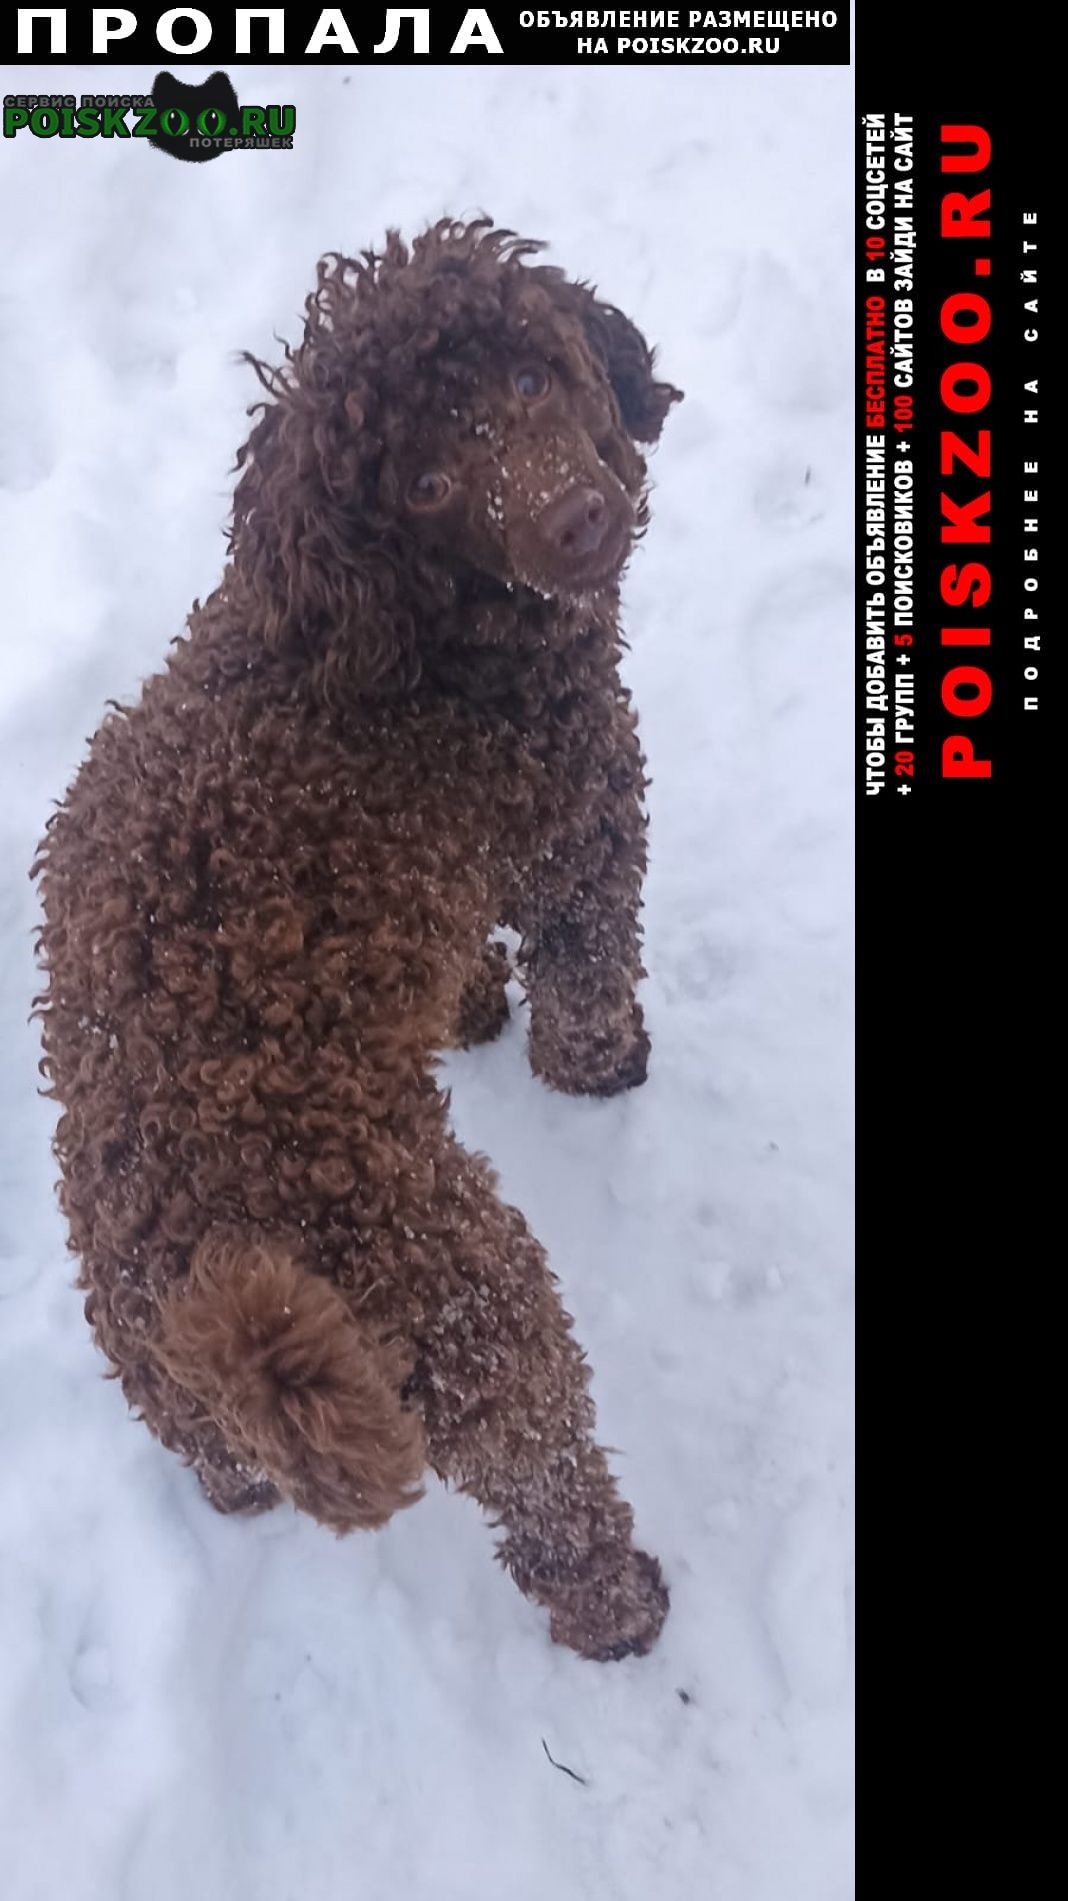 Пропала собака кобель карликовый пудель Санкт-Петербург